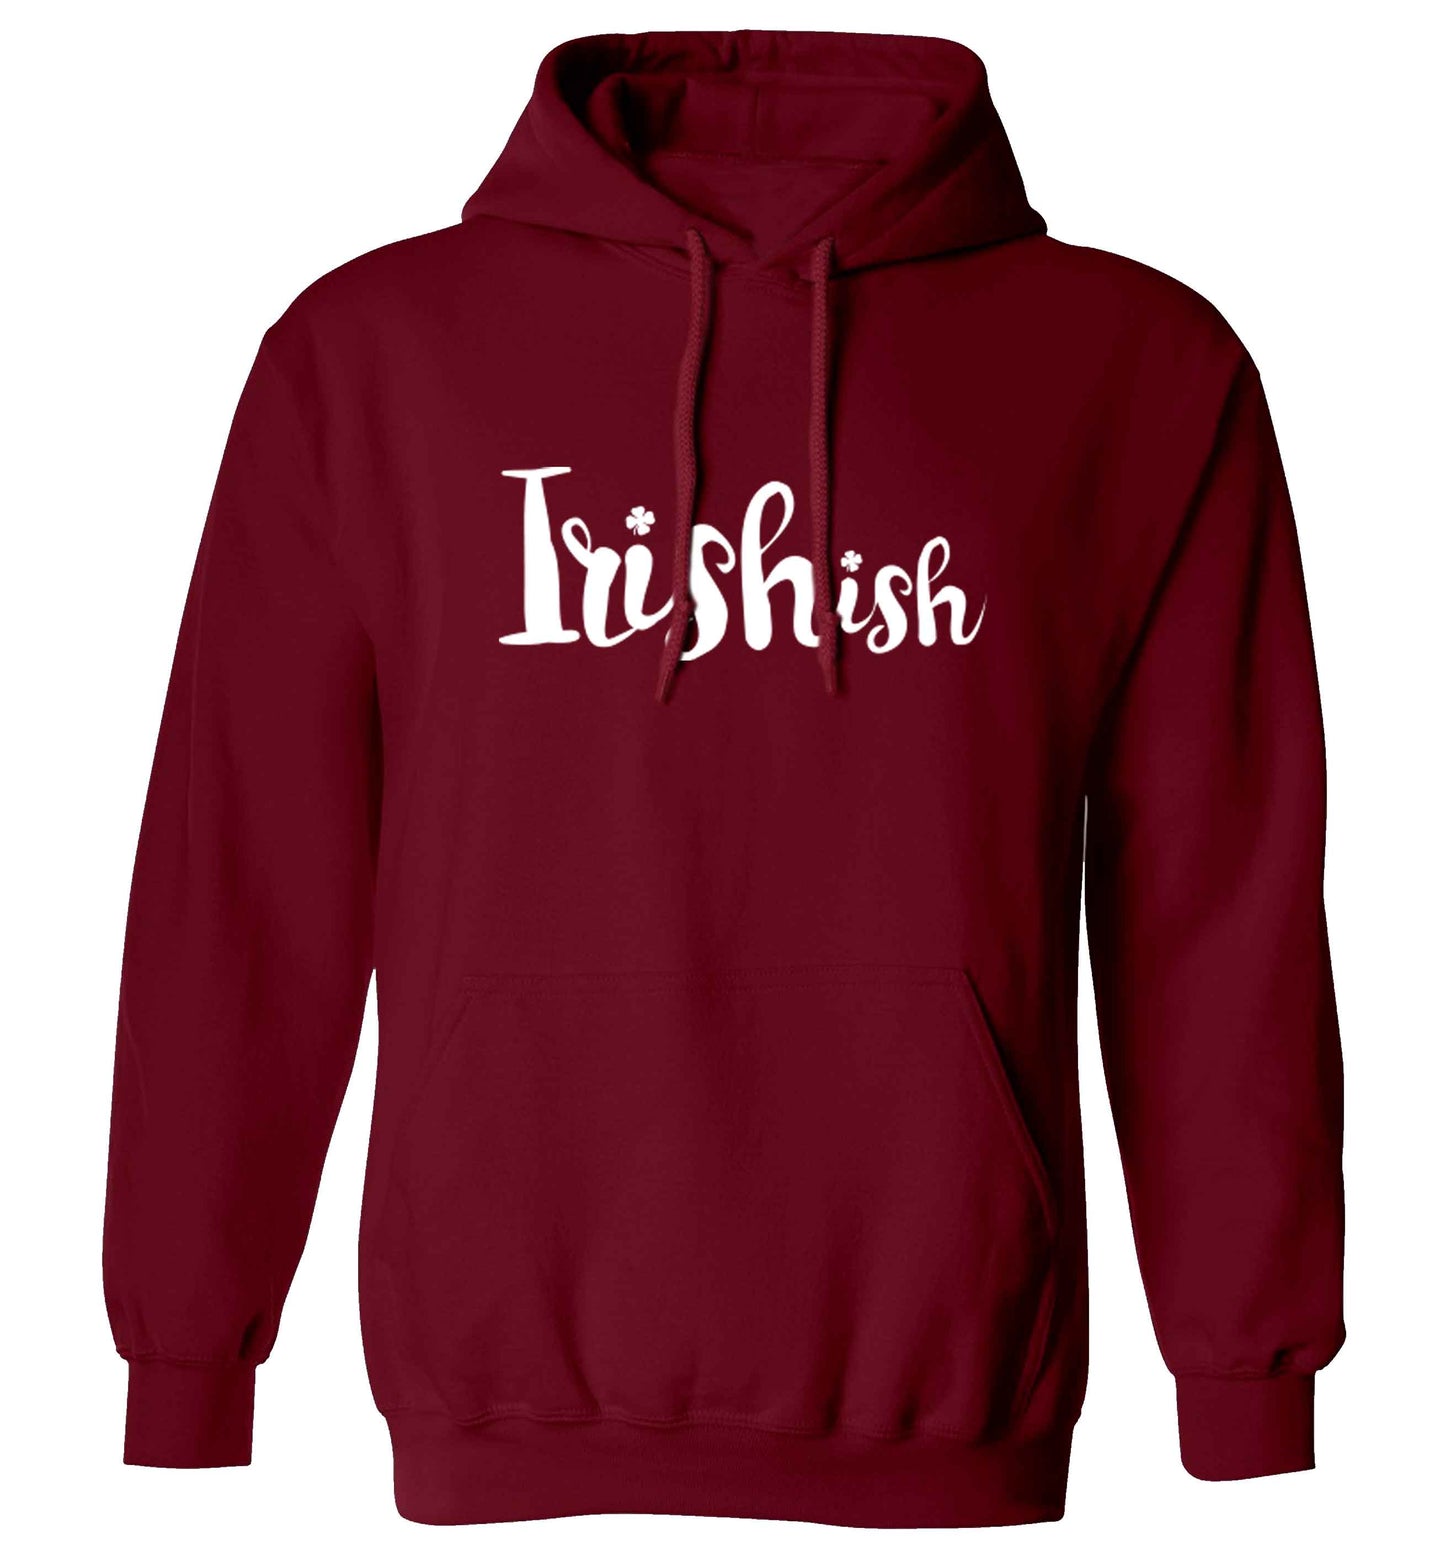 Irishish adults unisex maroon hoodie 2XL